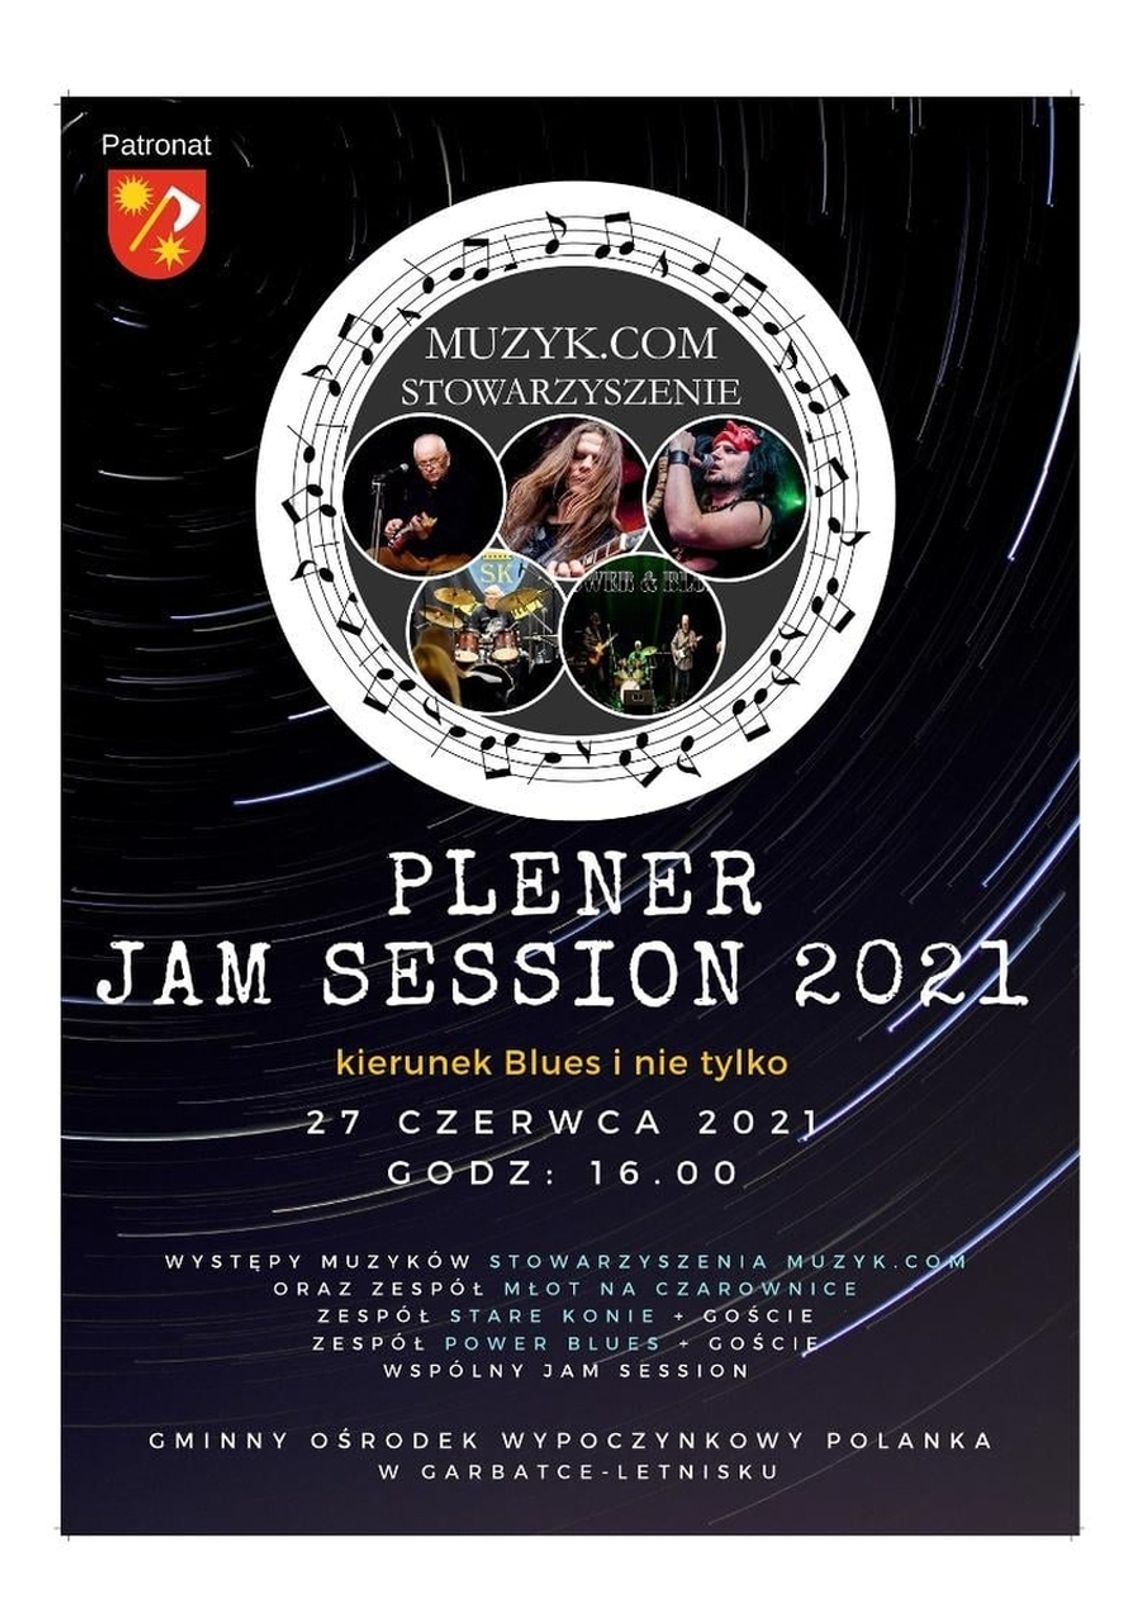 "Plener Jam Session 2021" w Garbatce -Letnisko już w tę niedzielę!